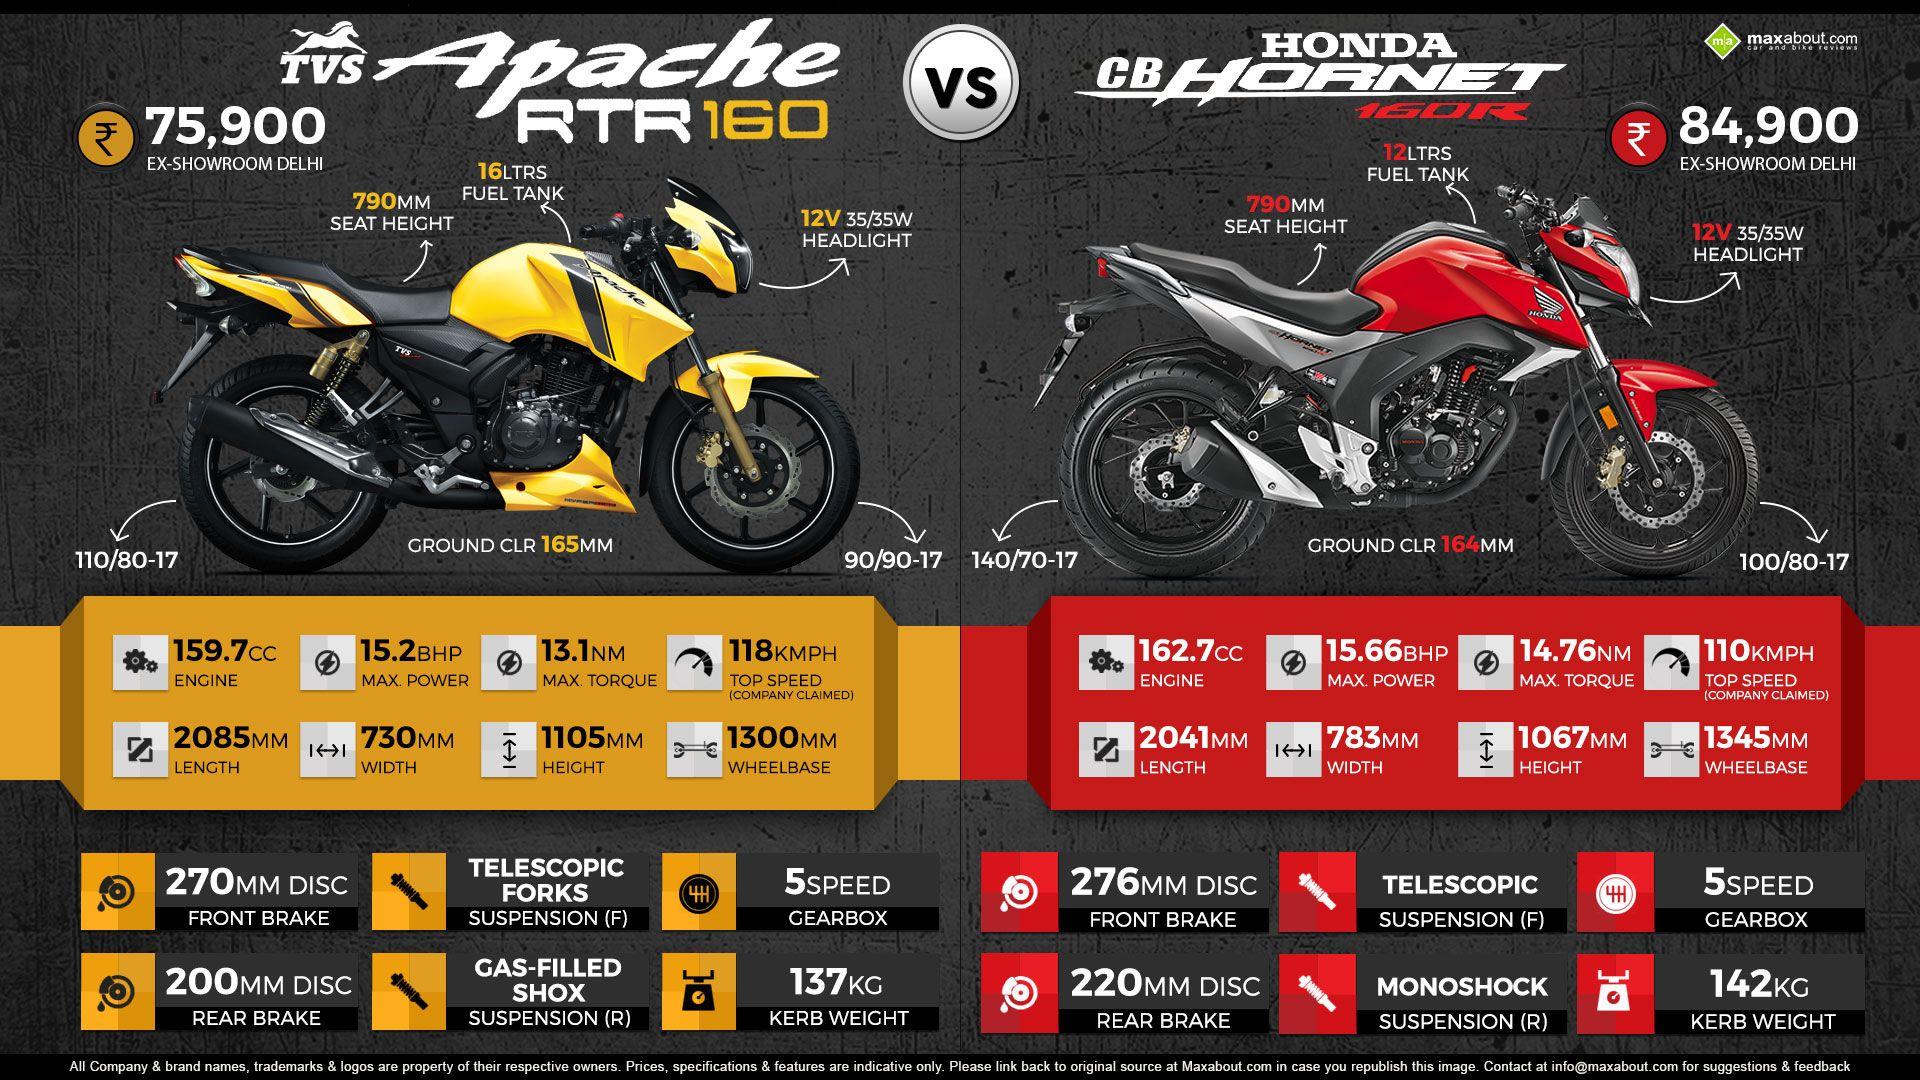 TVS Apache RTR 160 vs. Honda CB Hornet 160R